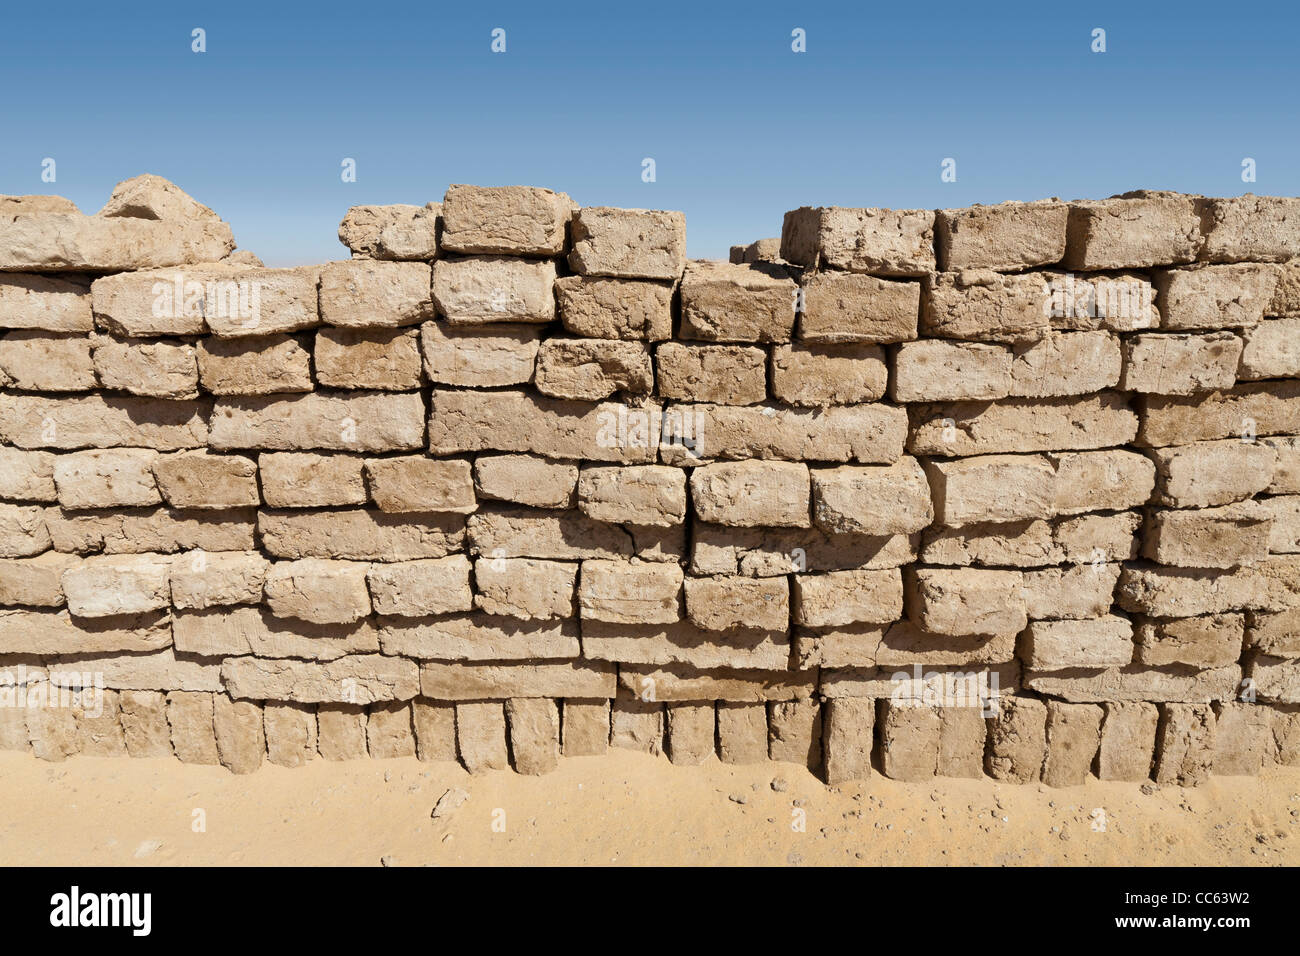 Neonata mattoni di fango essendo realizzato presso l'antico sito di Dush, a sud di Kharga Oasis, deserto occidentale d'Egitto Foto Stock